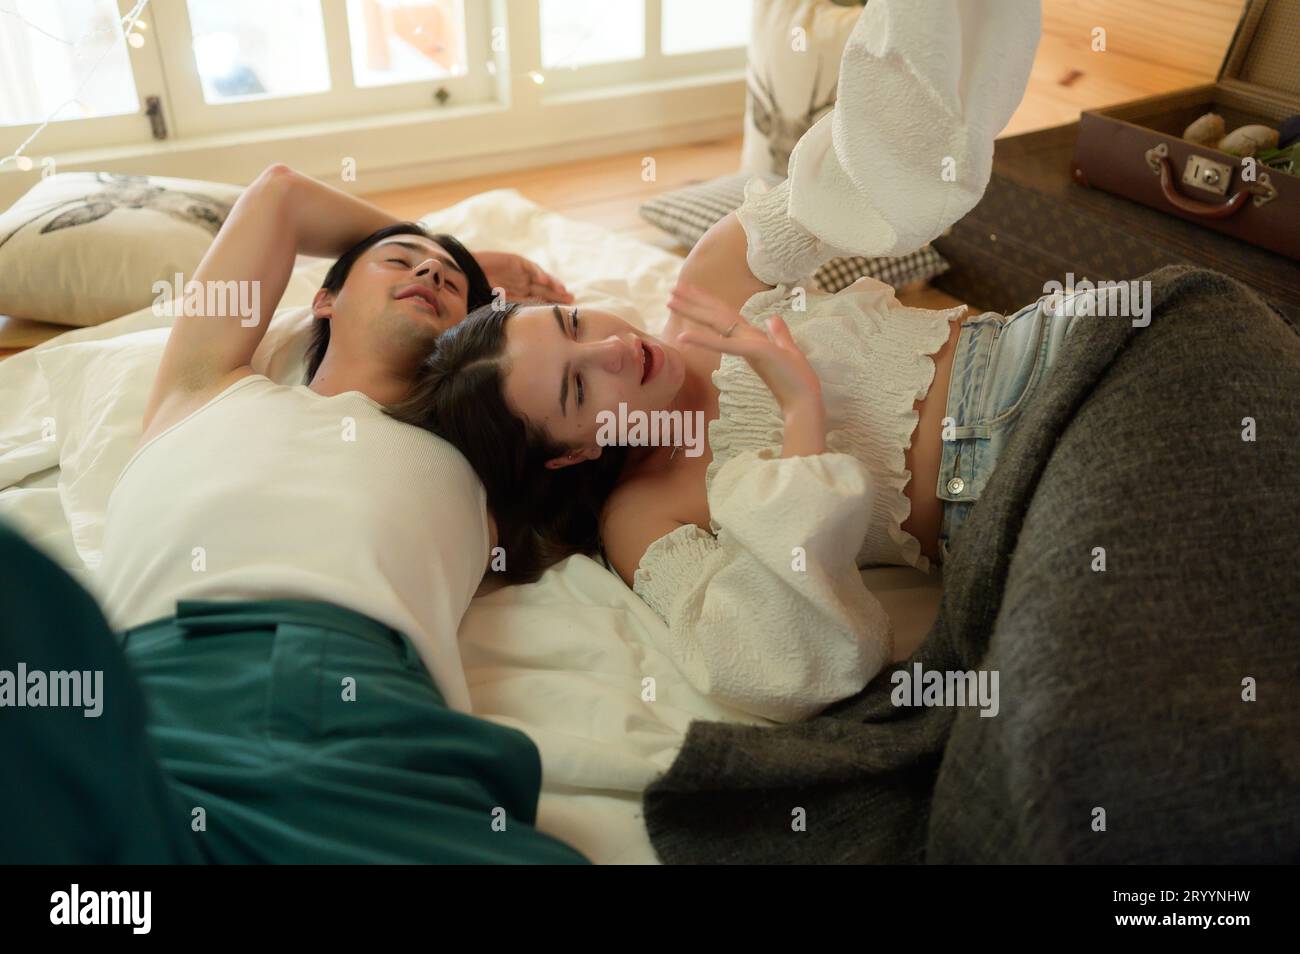 Giovane coppia in soffitta la mattina, salutare gli amici online utilizzando lo smartphone. Foto Stock